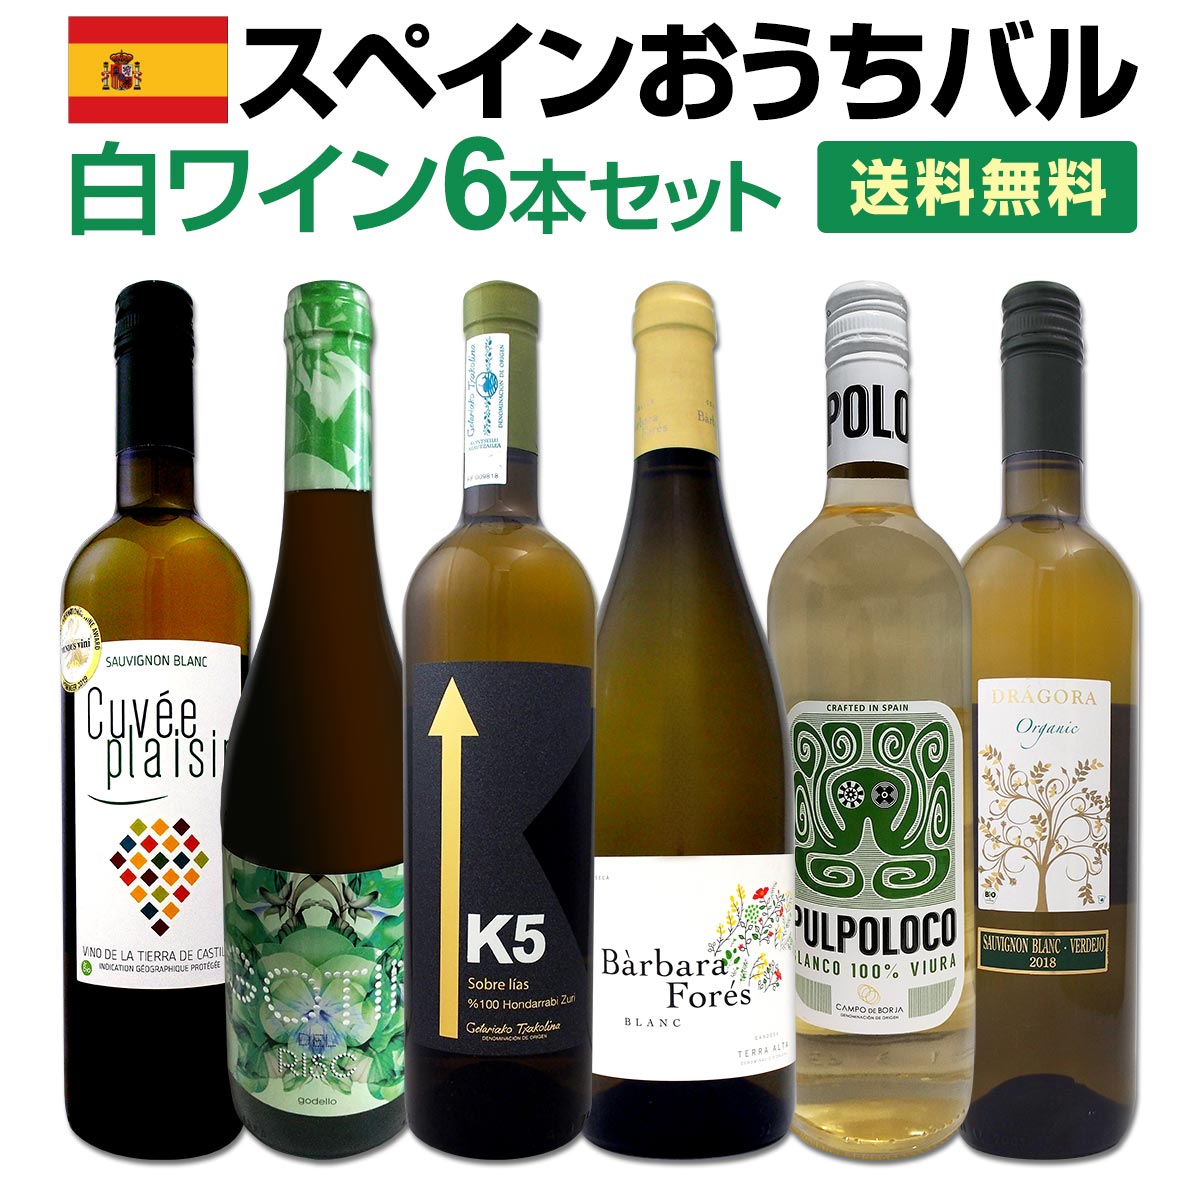 貨物輸送無料 目からウロコ スペイン白いことワインの いま は超激旨 スペインおうちバル白ワイン6単行本セット Barlo Com Br